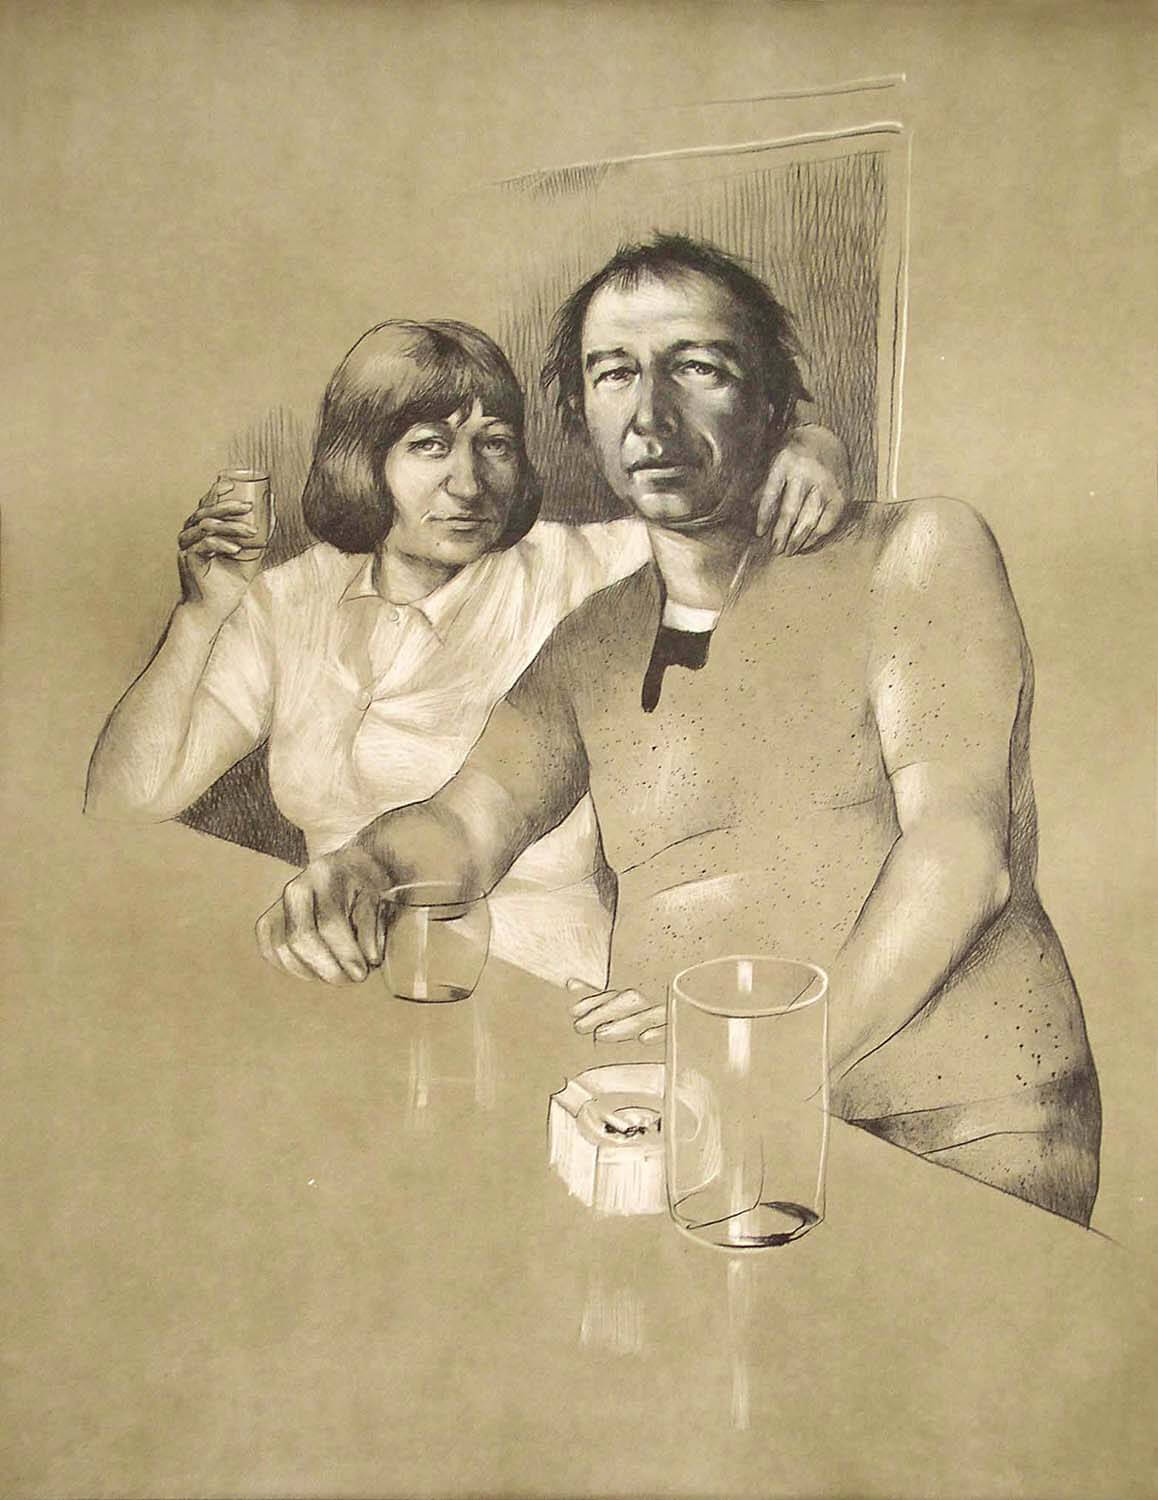 Harald Duwe, o. T. (Selbst mit Frau am Tresen), 1975, Lithographie, Auflage: 100, Bild: 55,5 x 43,5 cm, Blatt: 65 x 50 cm